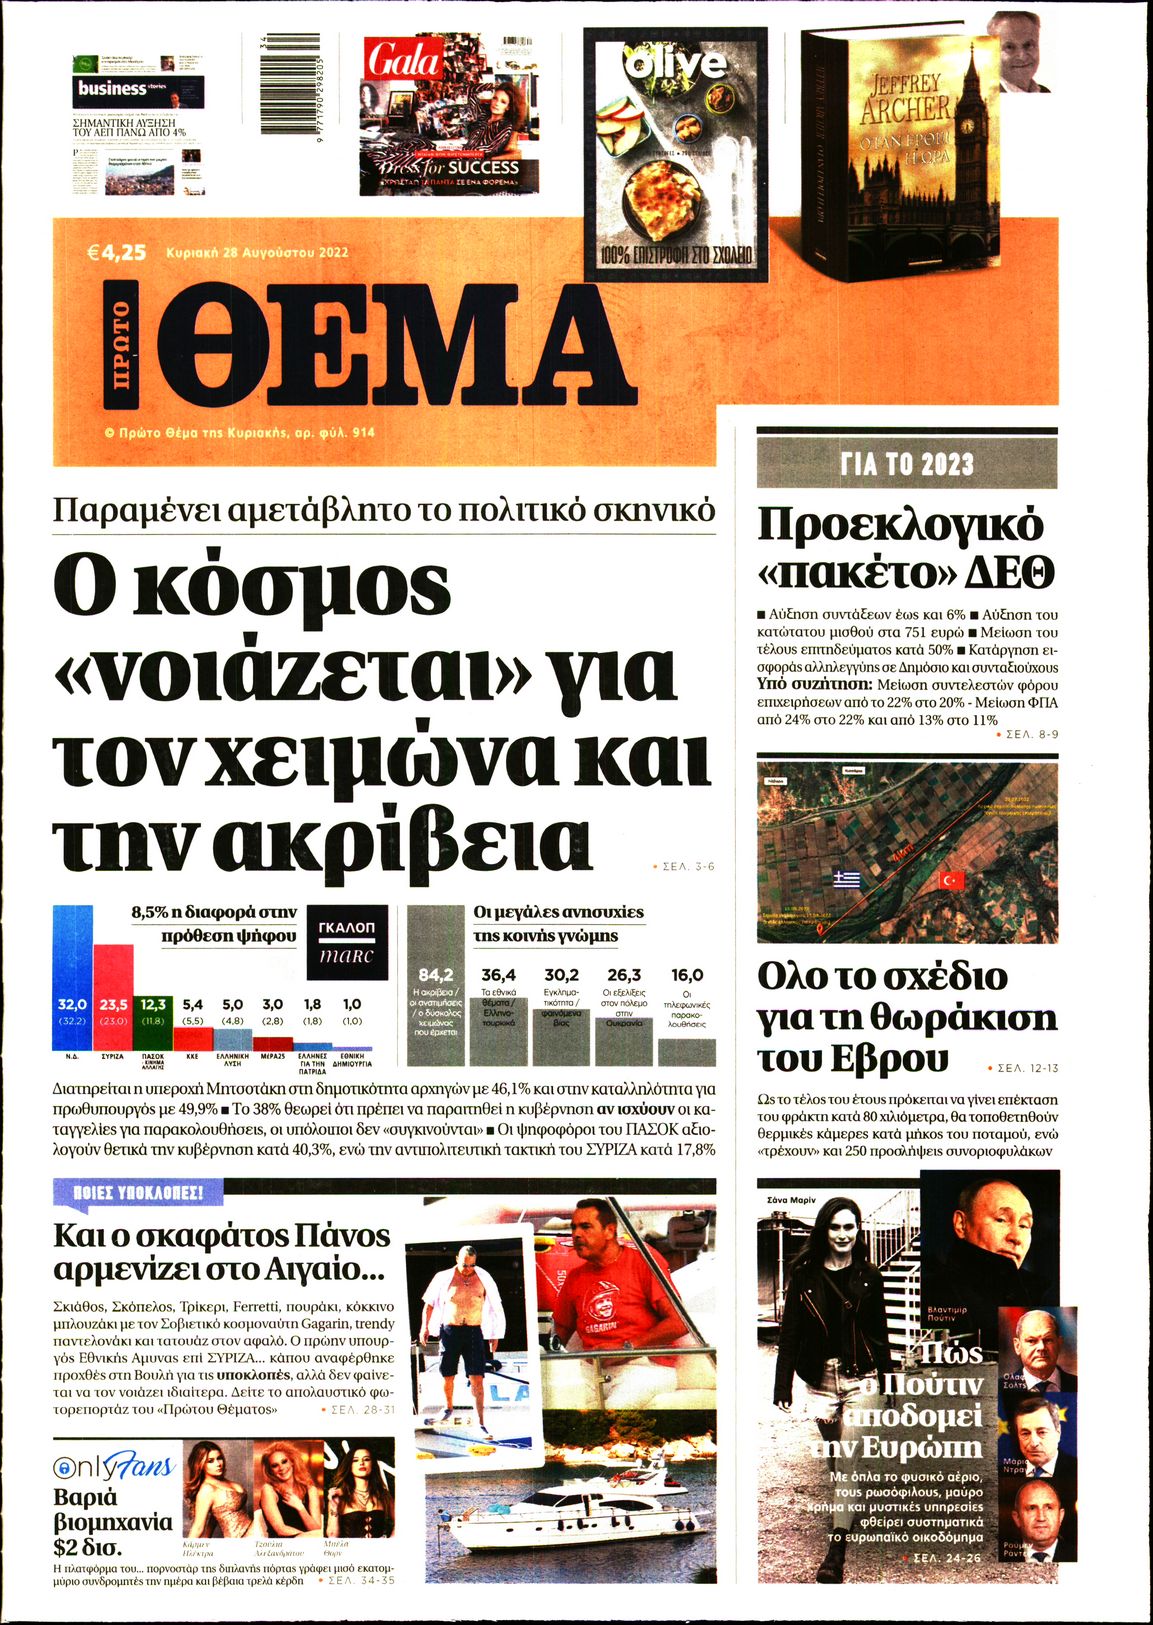 Εξώφυλο εφημερίδας ΠΡΩΤΟ ΘΕΜΑ 2022-08-28